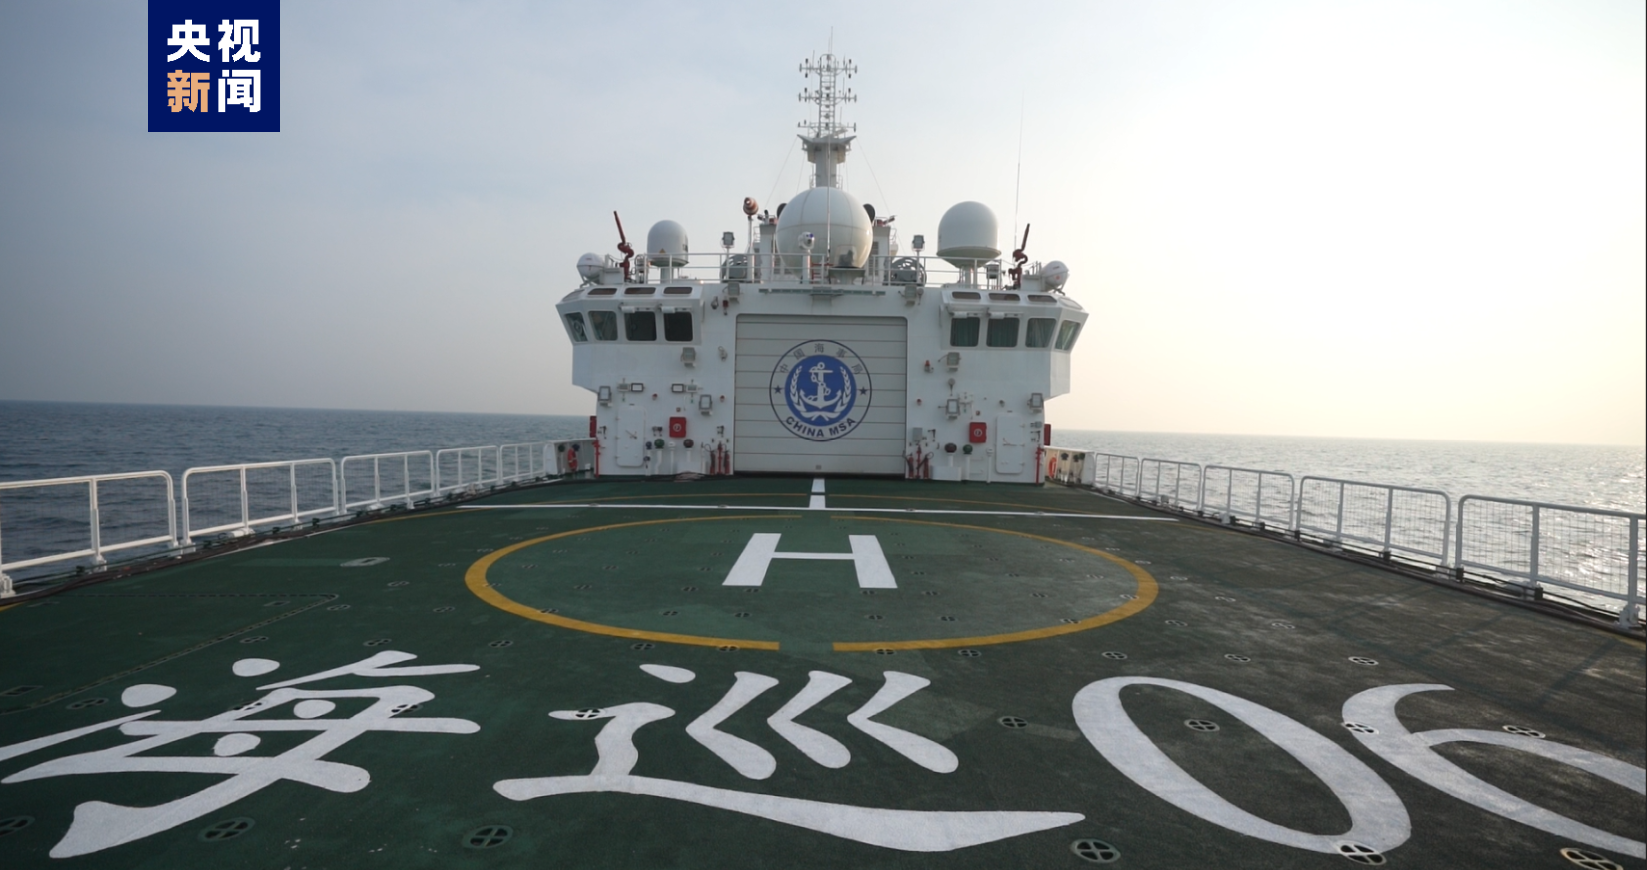 台湾海峡大型巡航救助船“海巡06”轮首次巡航执法活动7月31日启动